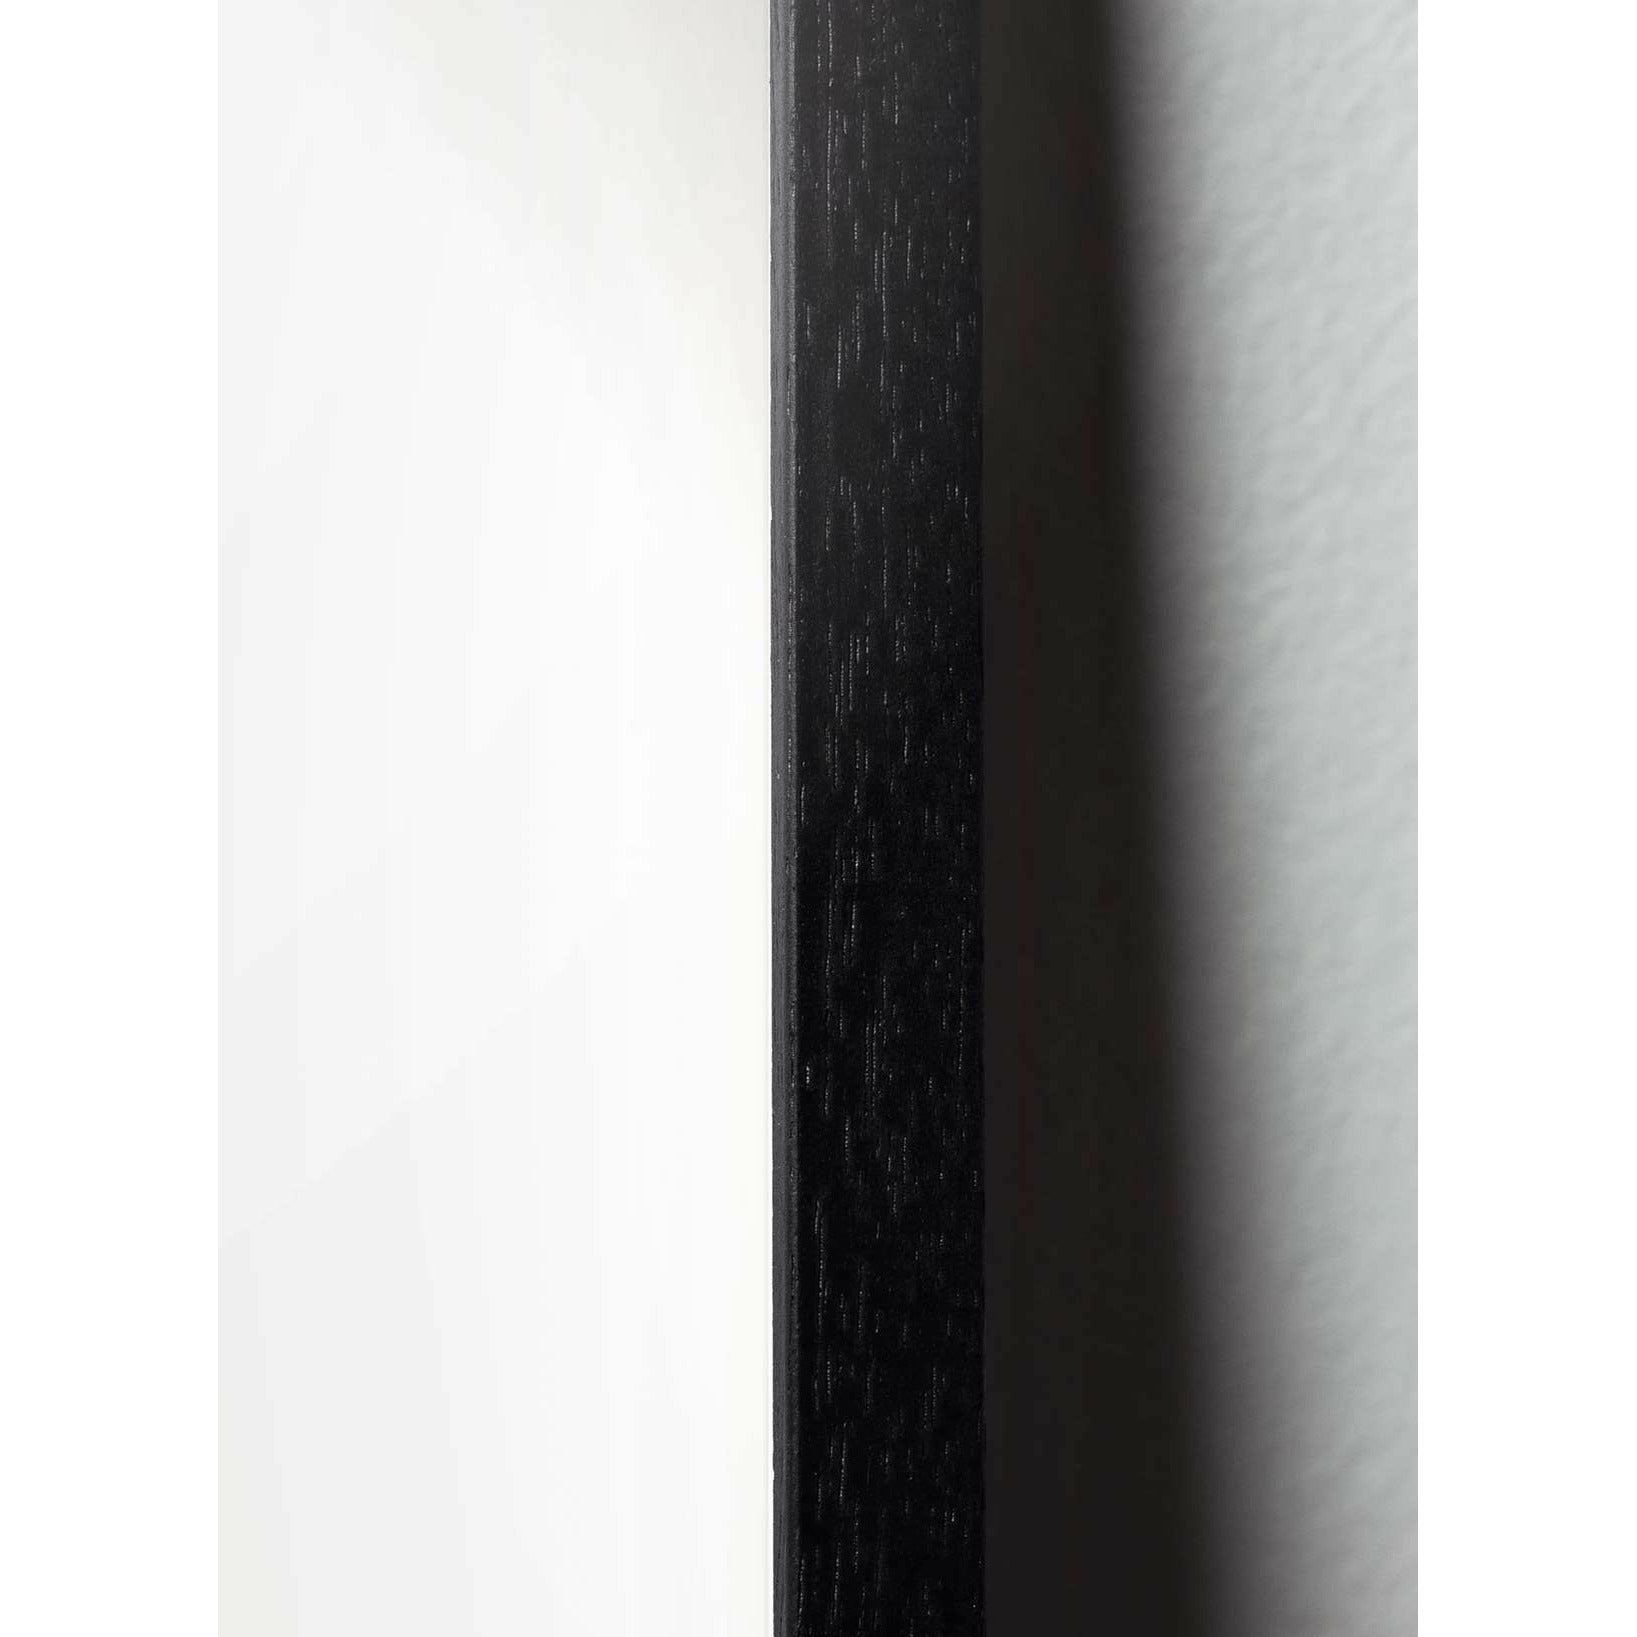 Klasický plakát mozkového medvěda, rám v černém lakovaném dřevu 70x100 cm, písemné barvy pozadí